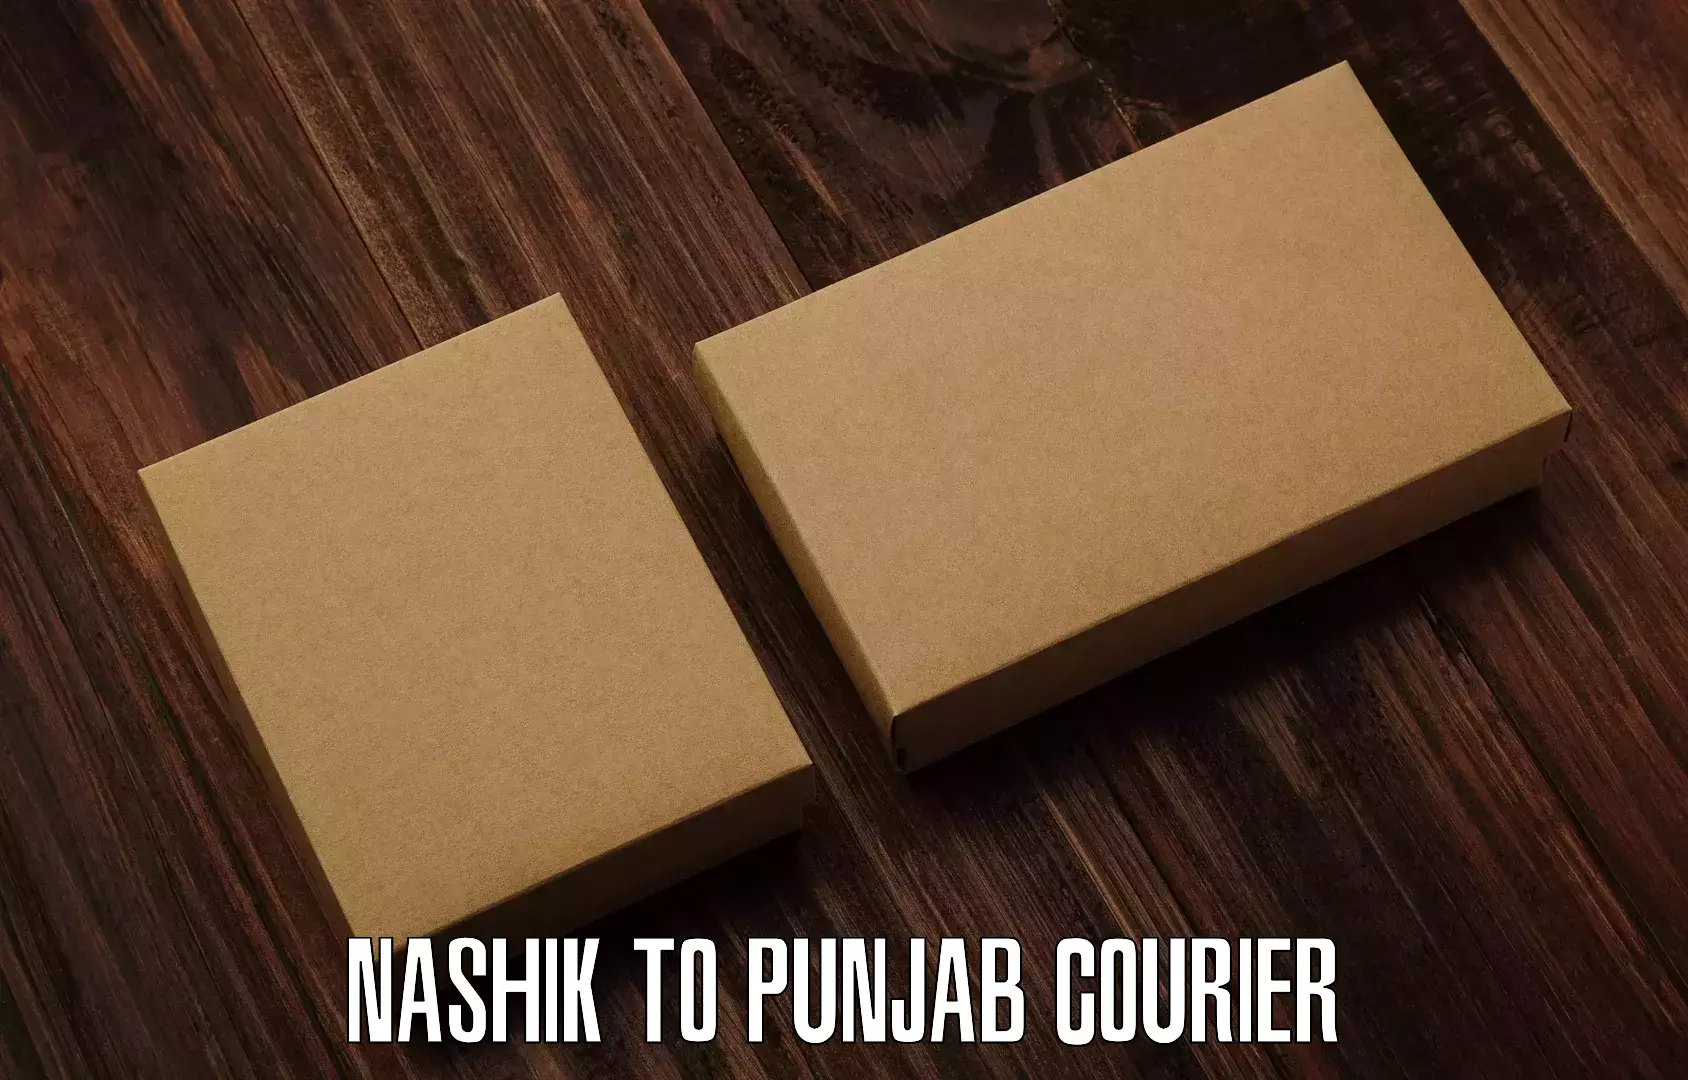 Express package handling Nashik to Punjab